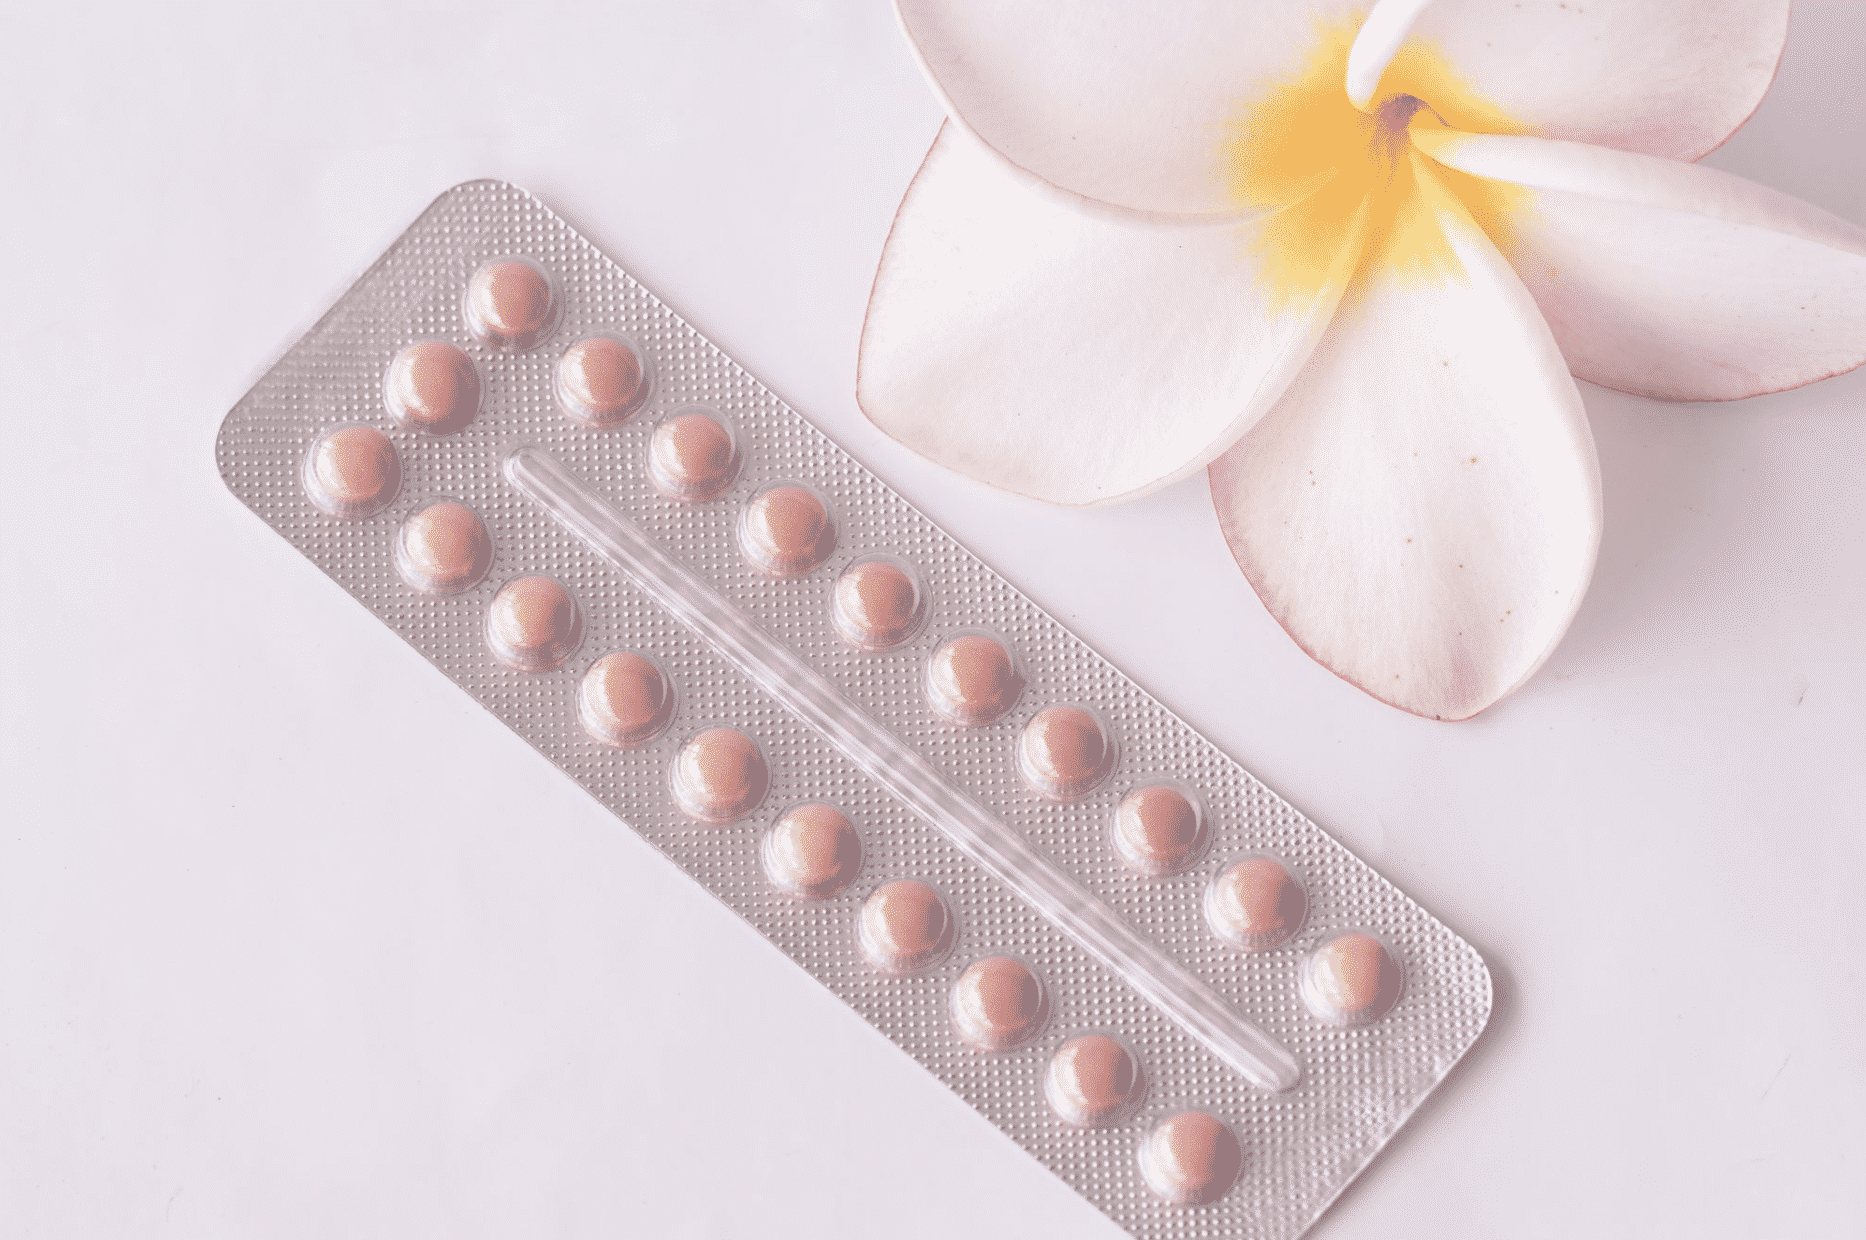 Vaccino AstraZeneca: “Attenzione per le donne che prendono la pillola”, presidente dell’Aifa avverte